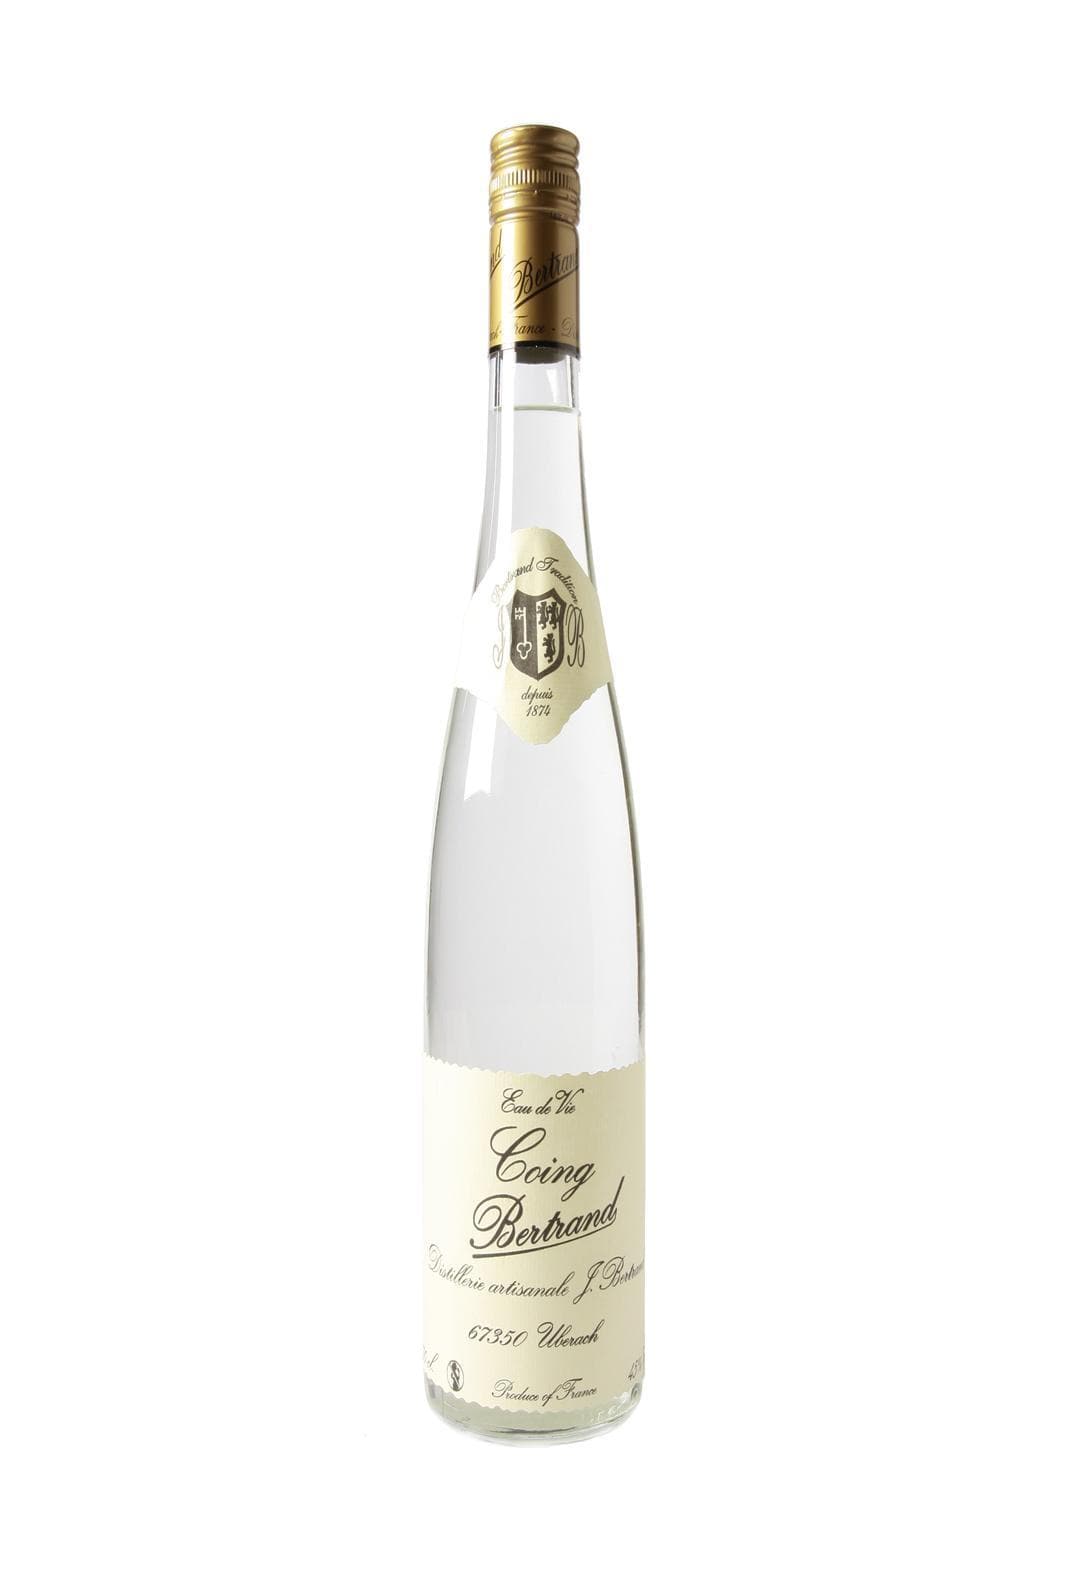 Bertrand Eau de Vie de Coing (Quince) 45% 700ml | Liqueurs | Shop online at Spirits of France